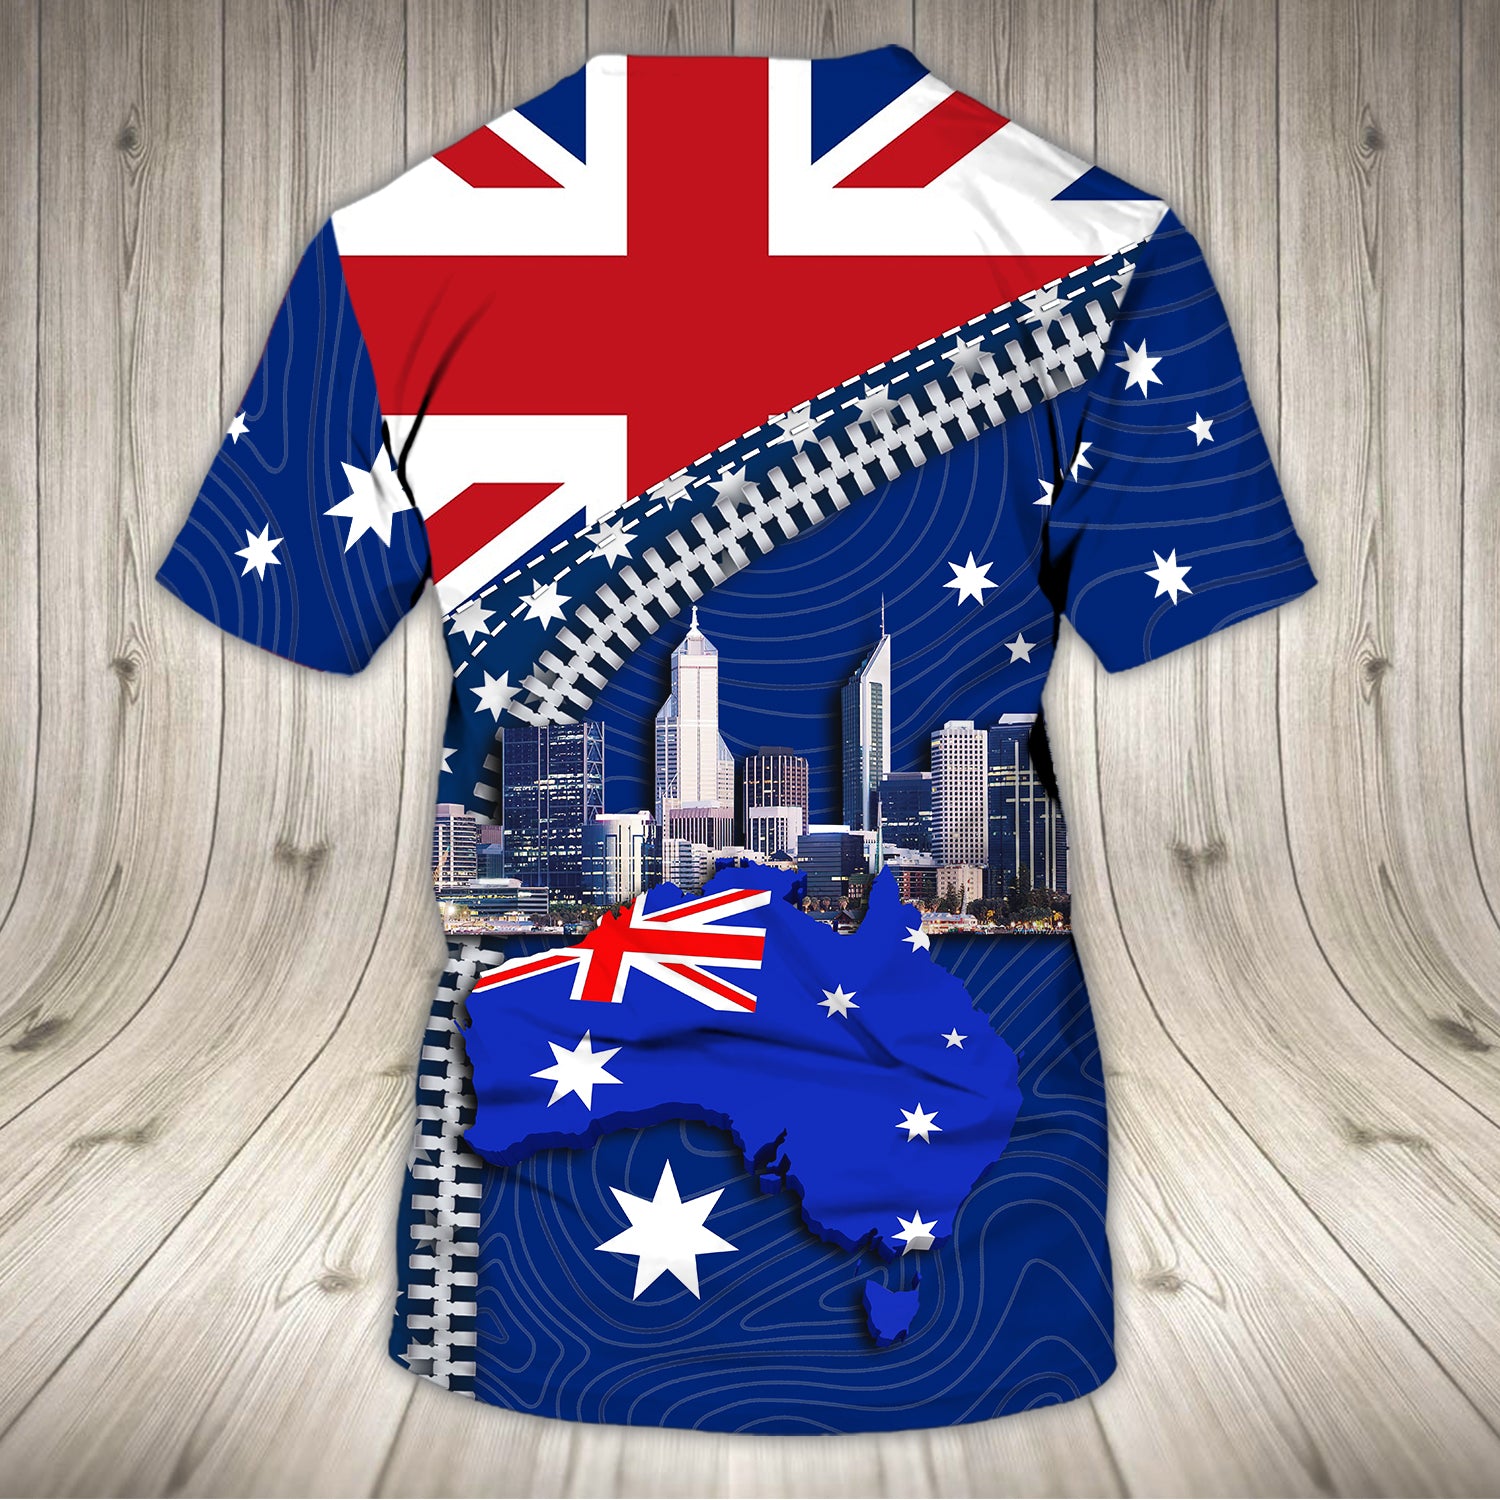 Perth Happy Australia Day, 26 January - 3D Tshirt - Tad 349